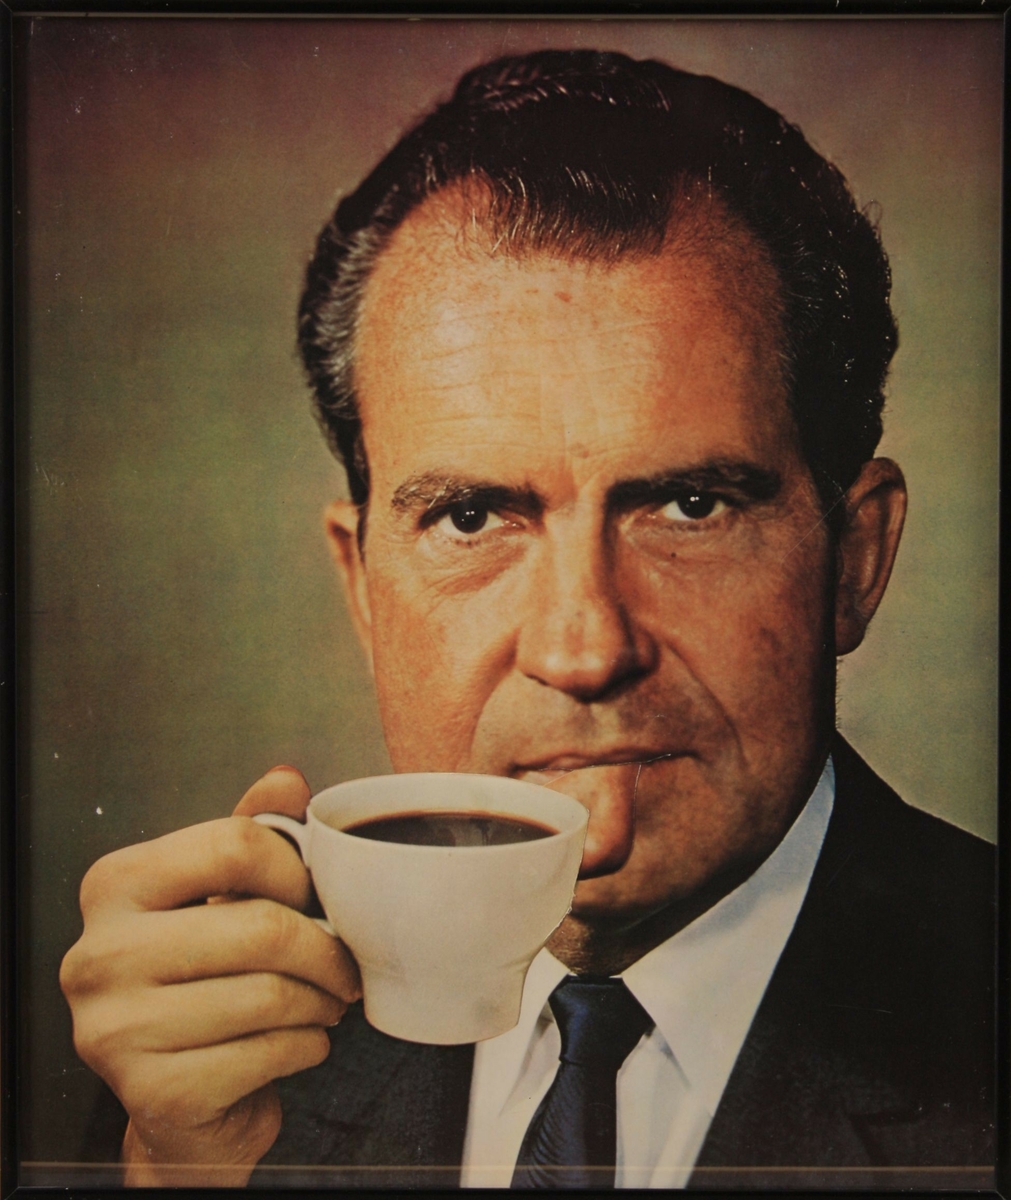 Nixon visions [Fotografi]